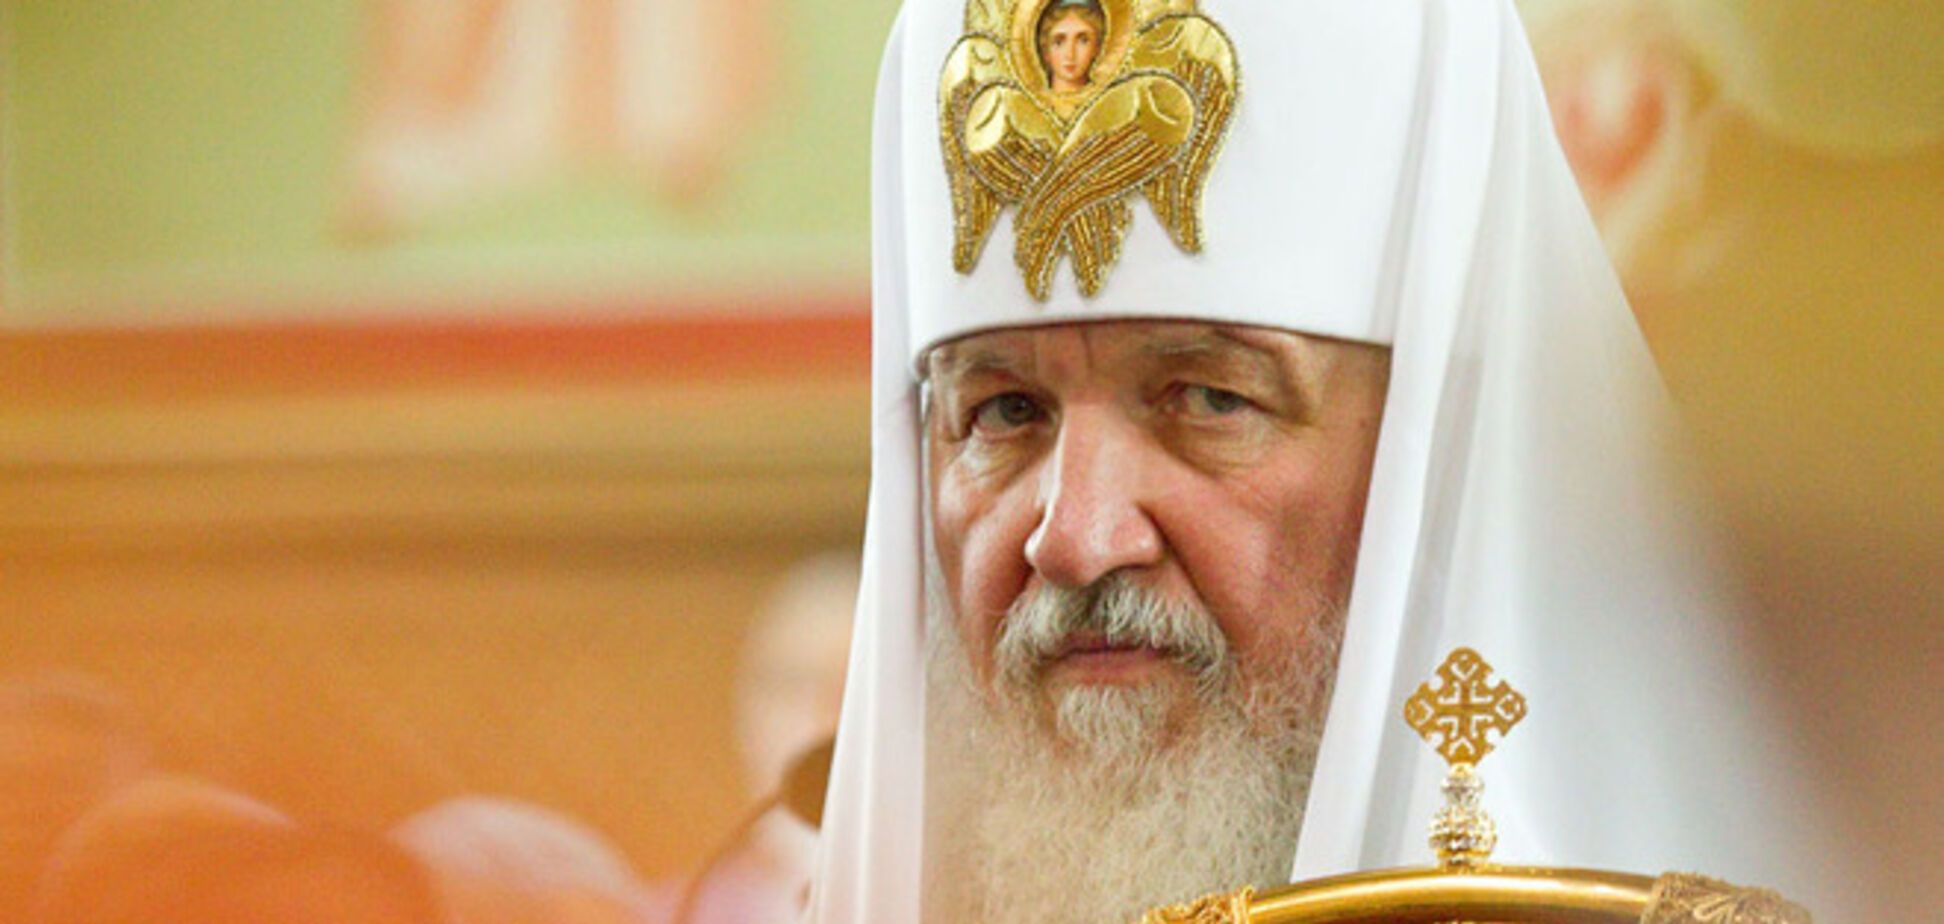 УПЦ КП: в Украине готовится церковный переворот 